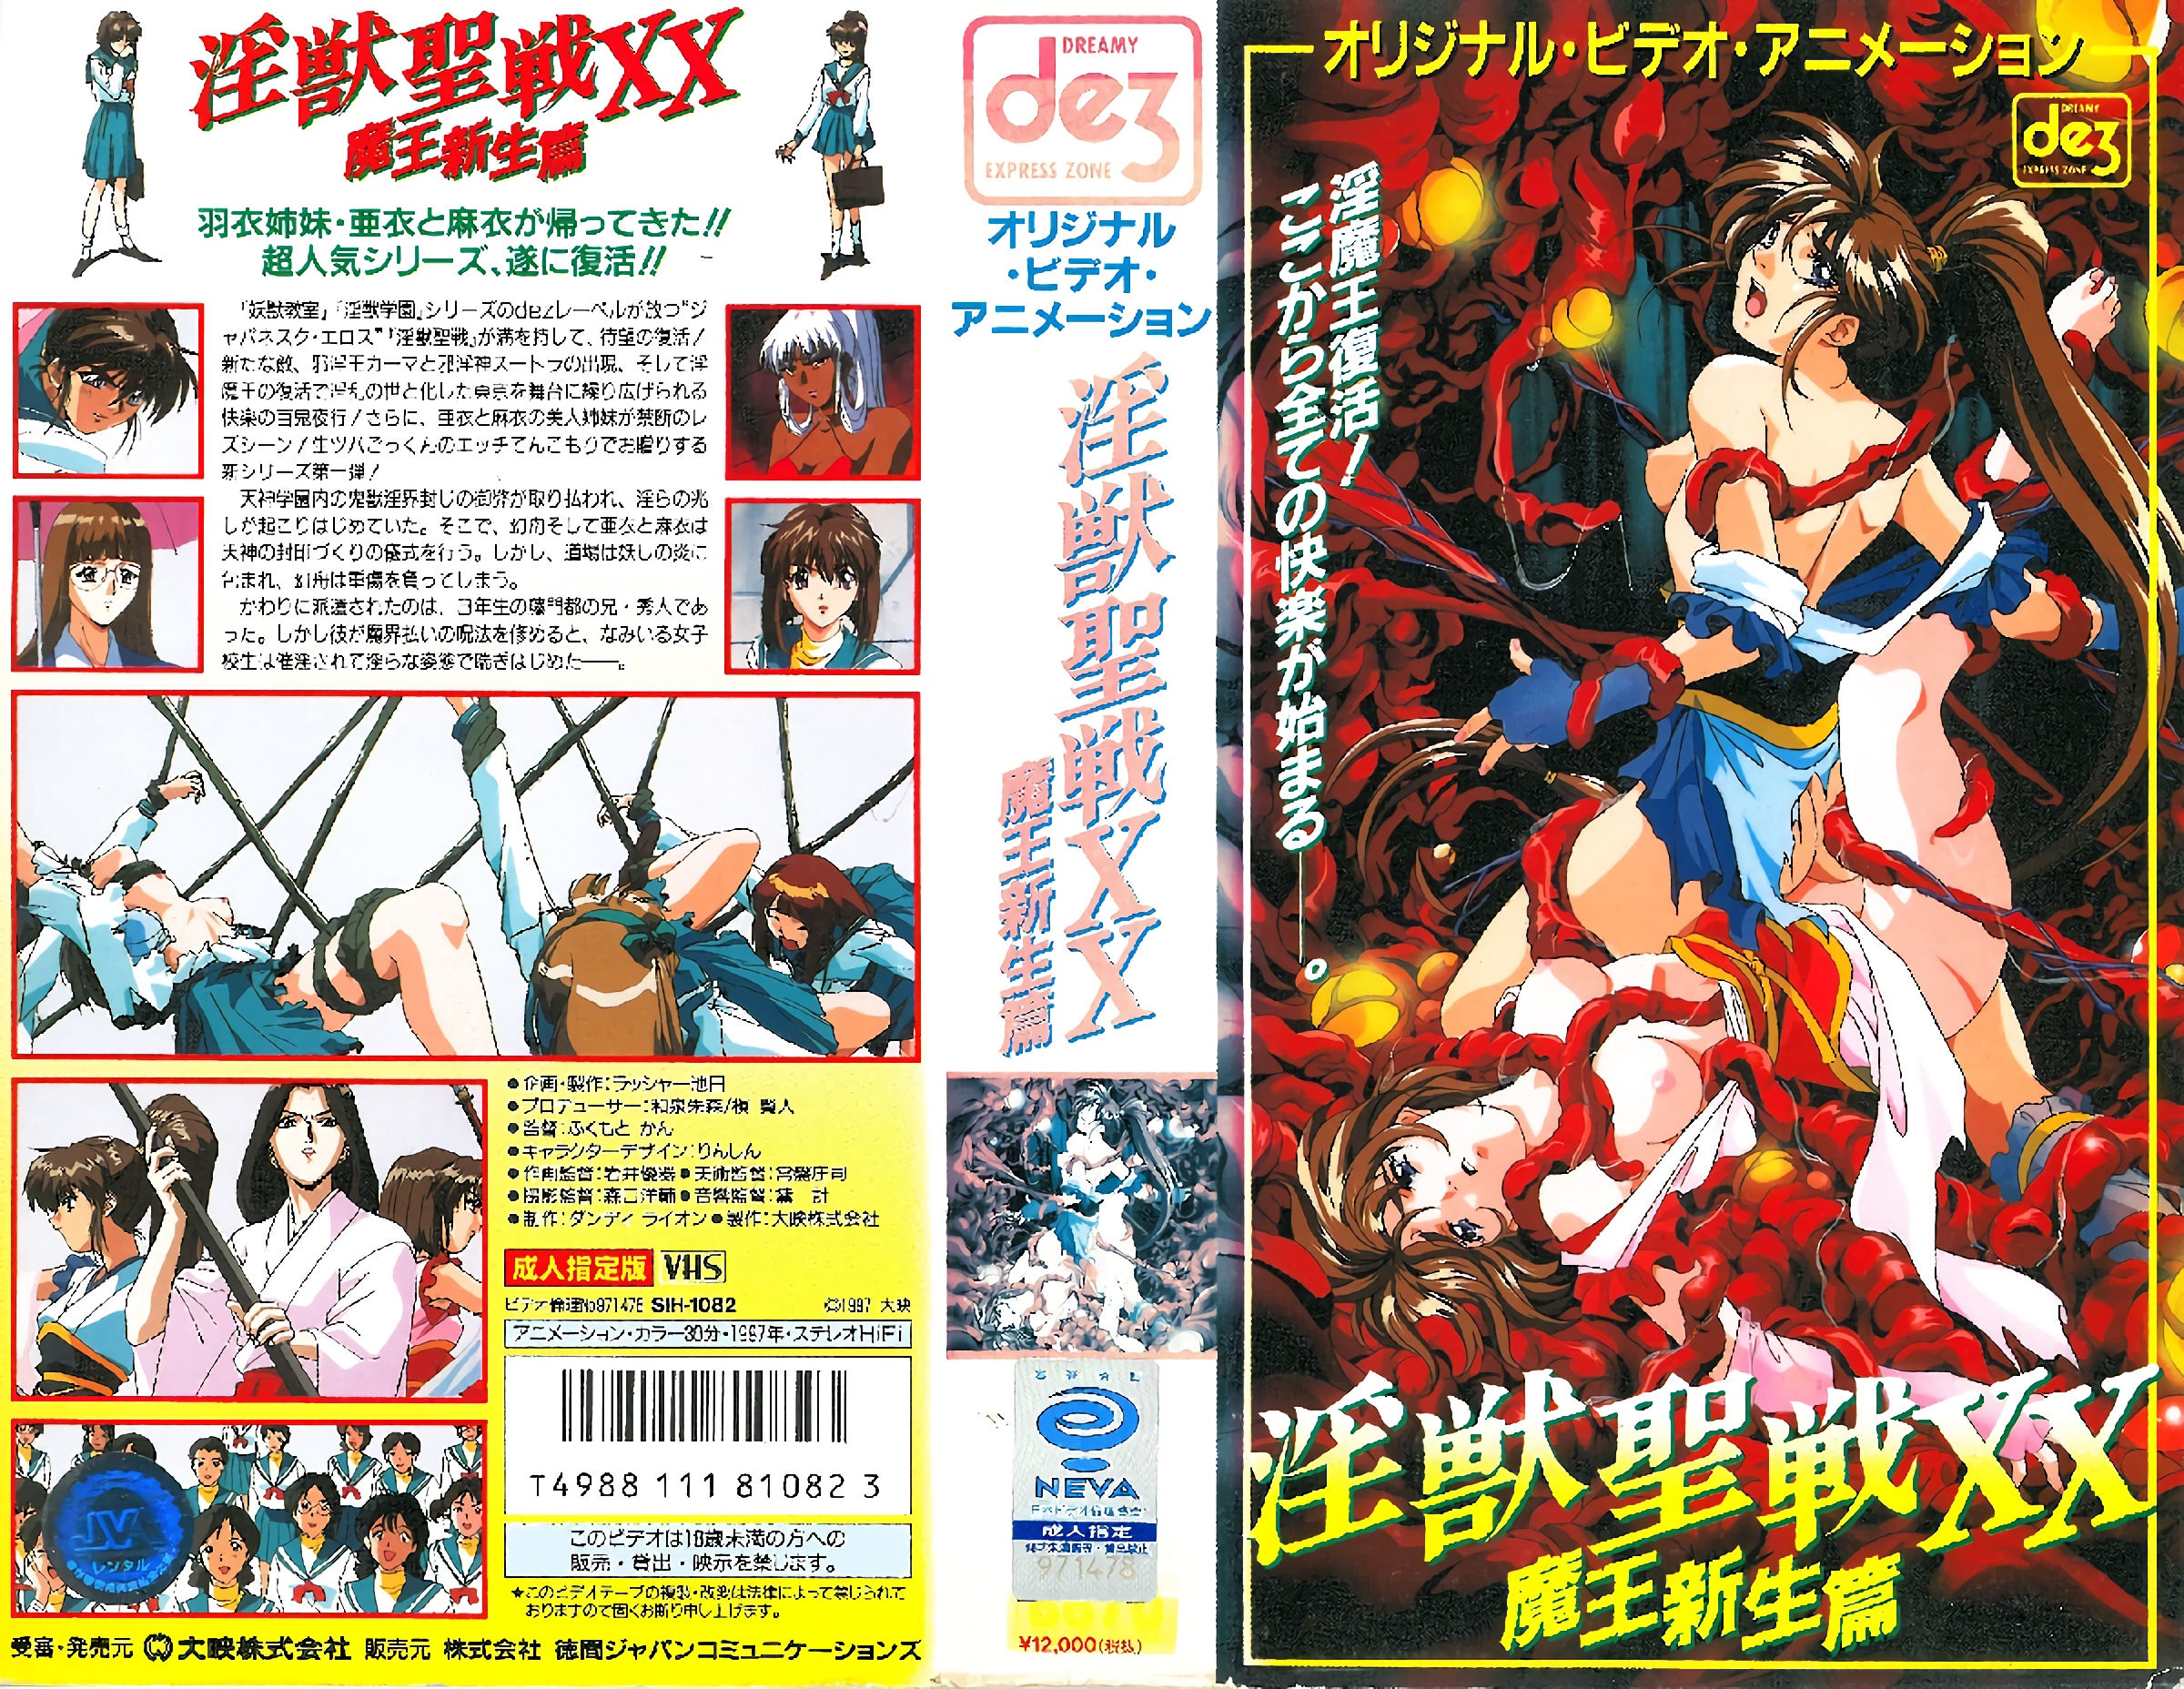 [199706] [Daizu] Holy Beast XX 1 Demon King Shinsei